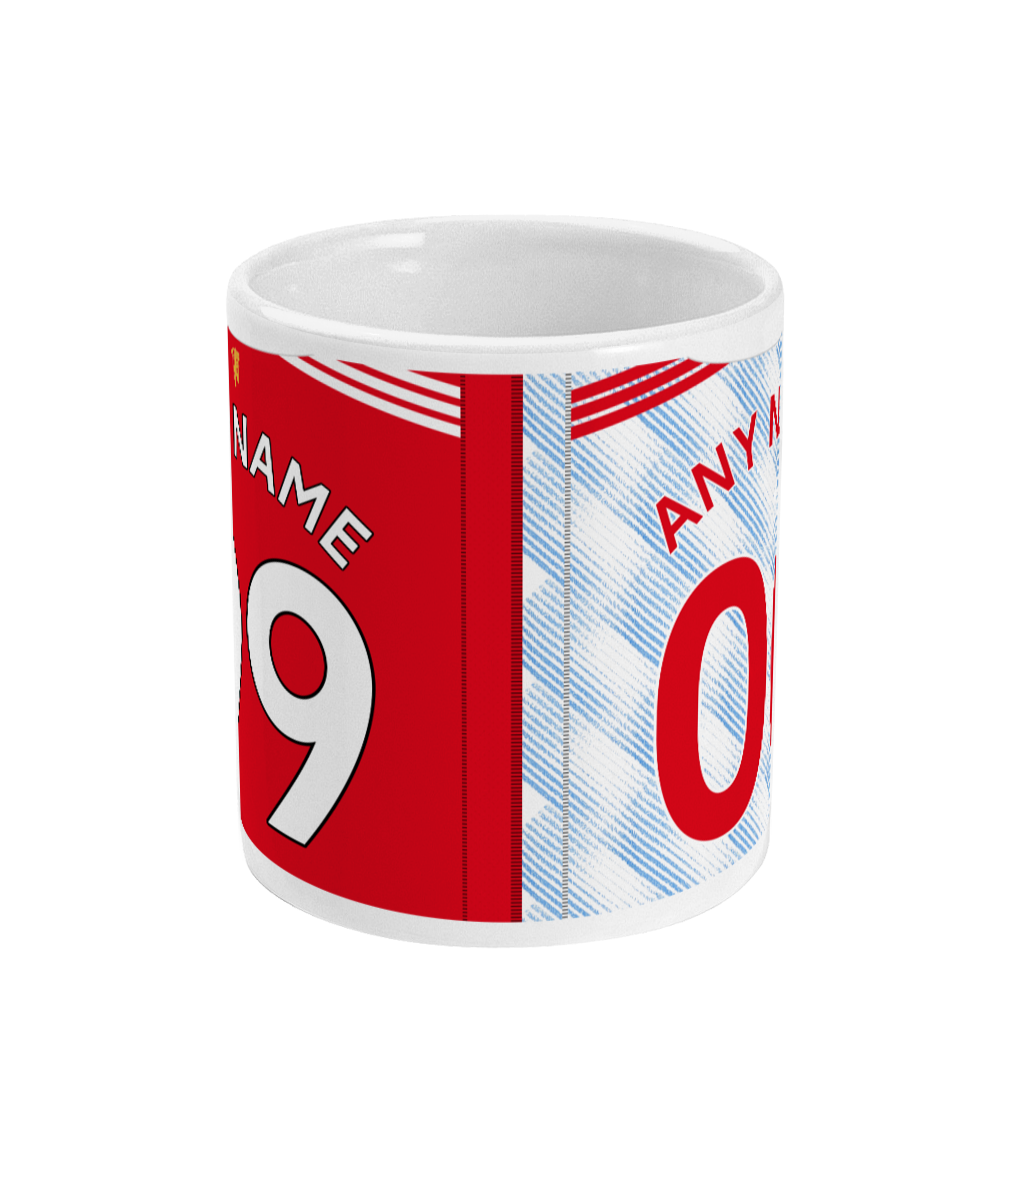 Man United - Mug personnalisé 2021/22 Domicile/Extérieur